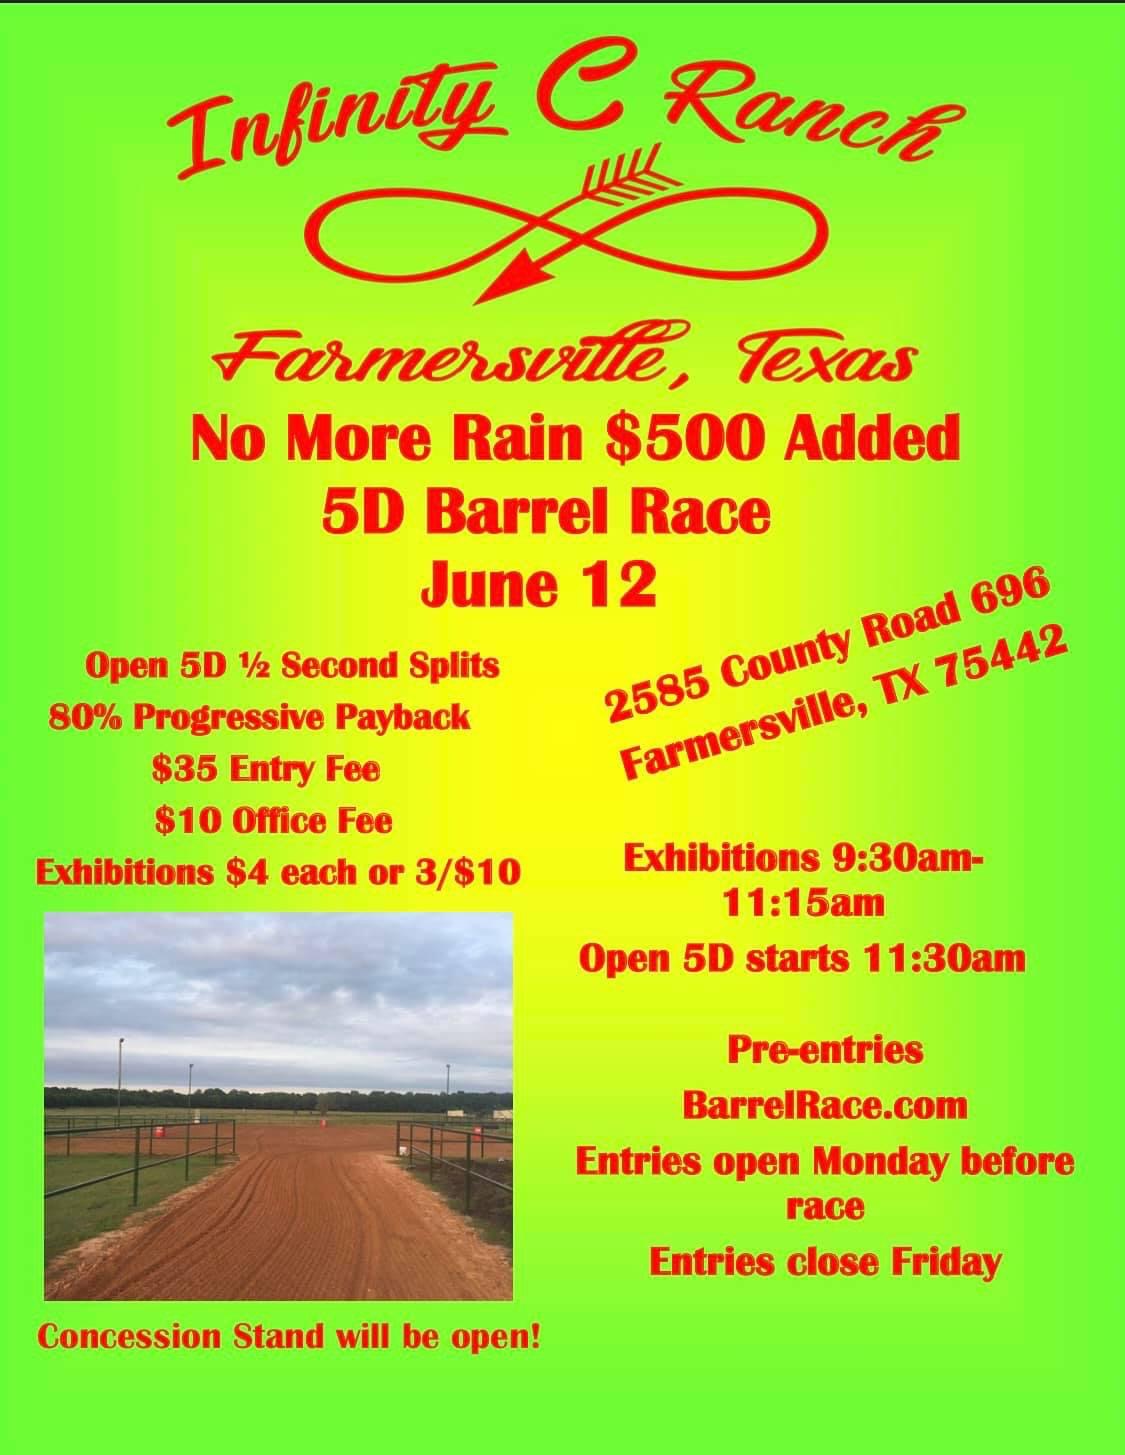 No More Rain $500 Added 5D Barrel Race